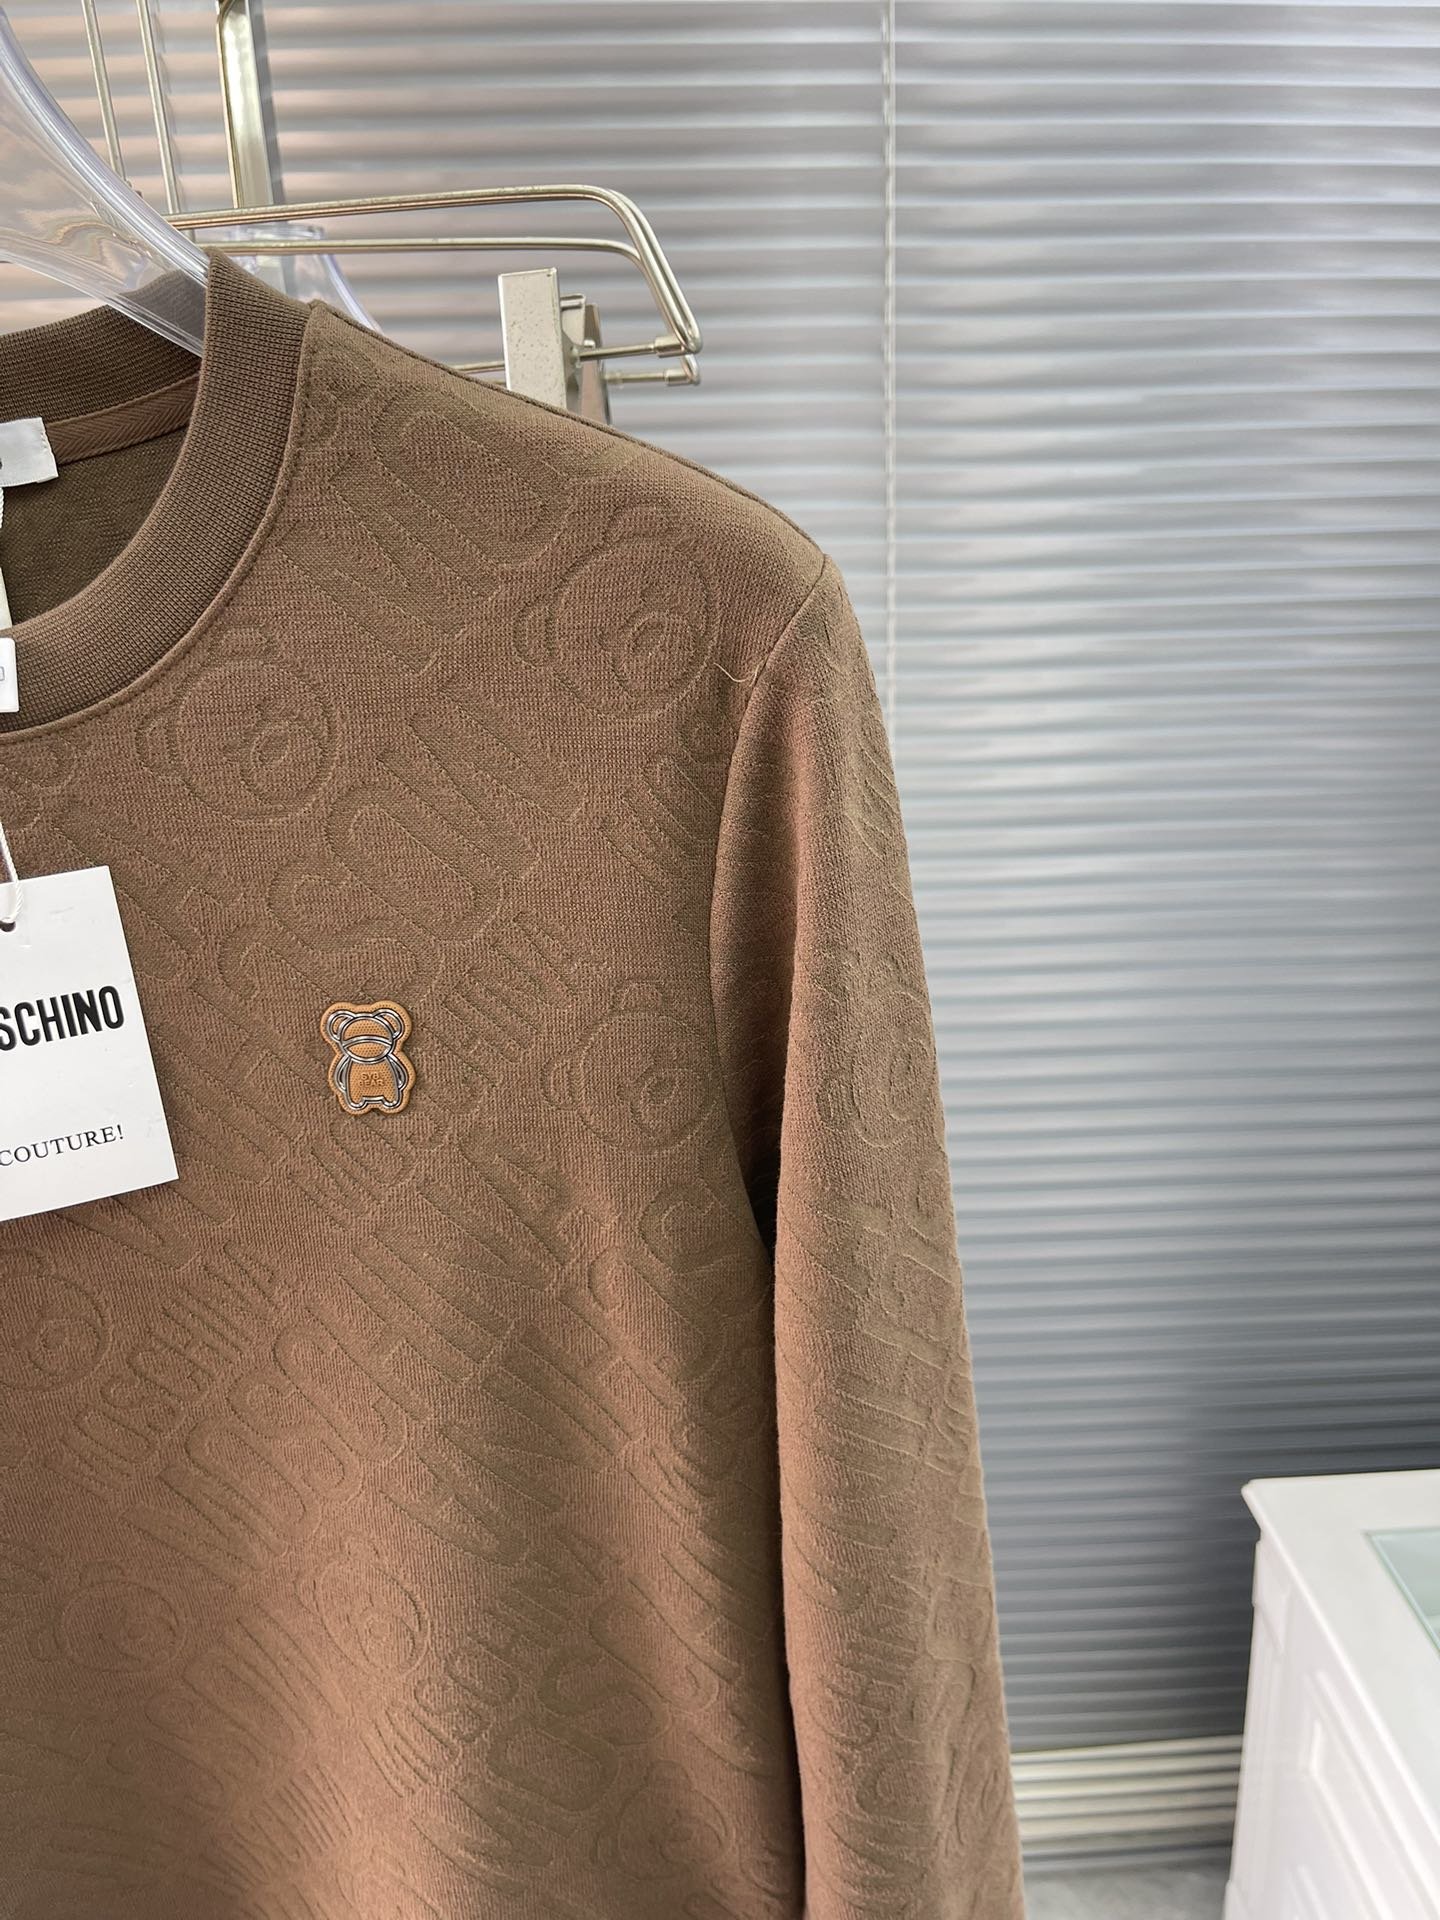 码数L-4XLMOSCHIN*莫思奇诺2023秋季新款男士长袖T恤品牌最新设计元素！既不单调也不复杂,恰